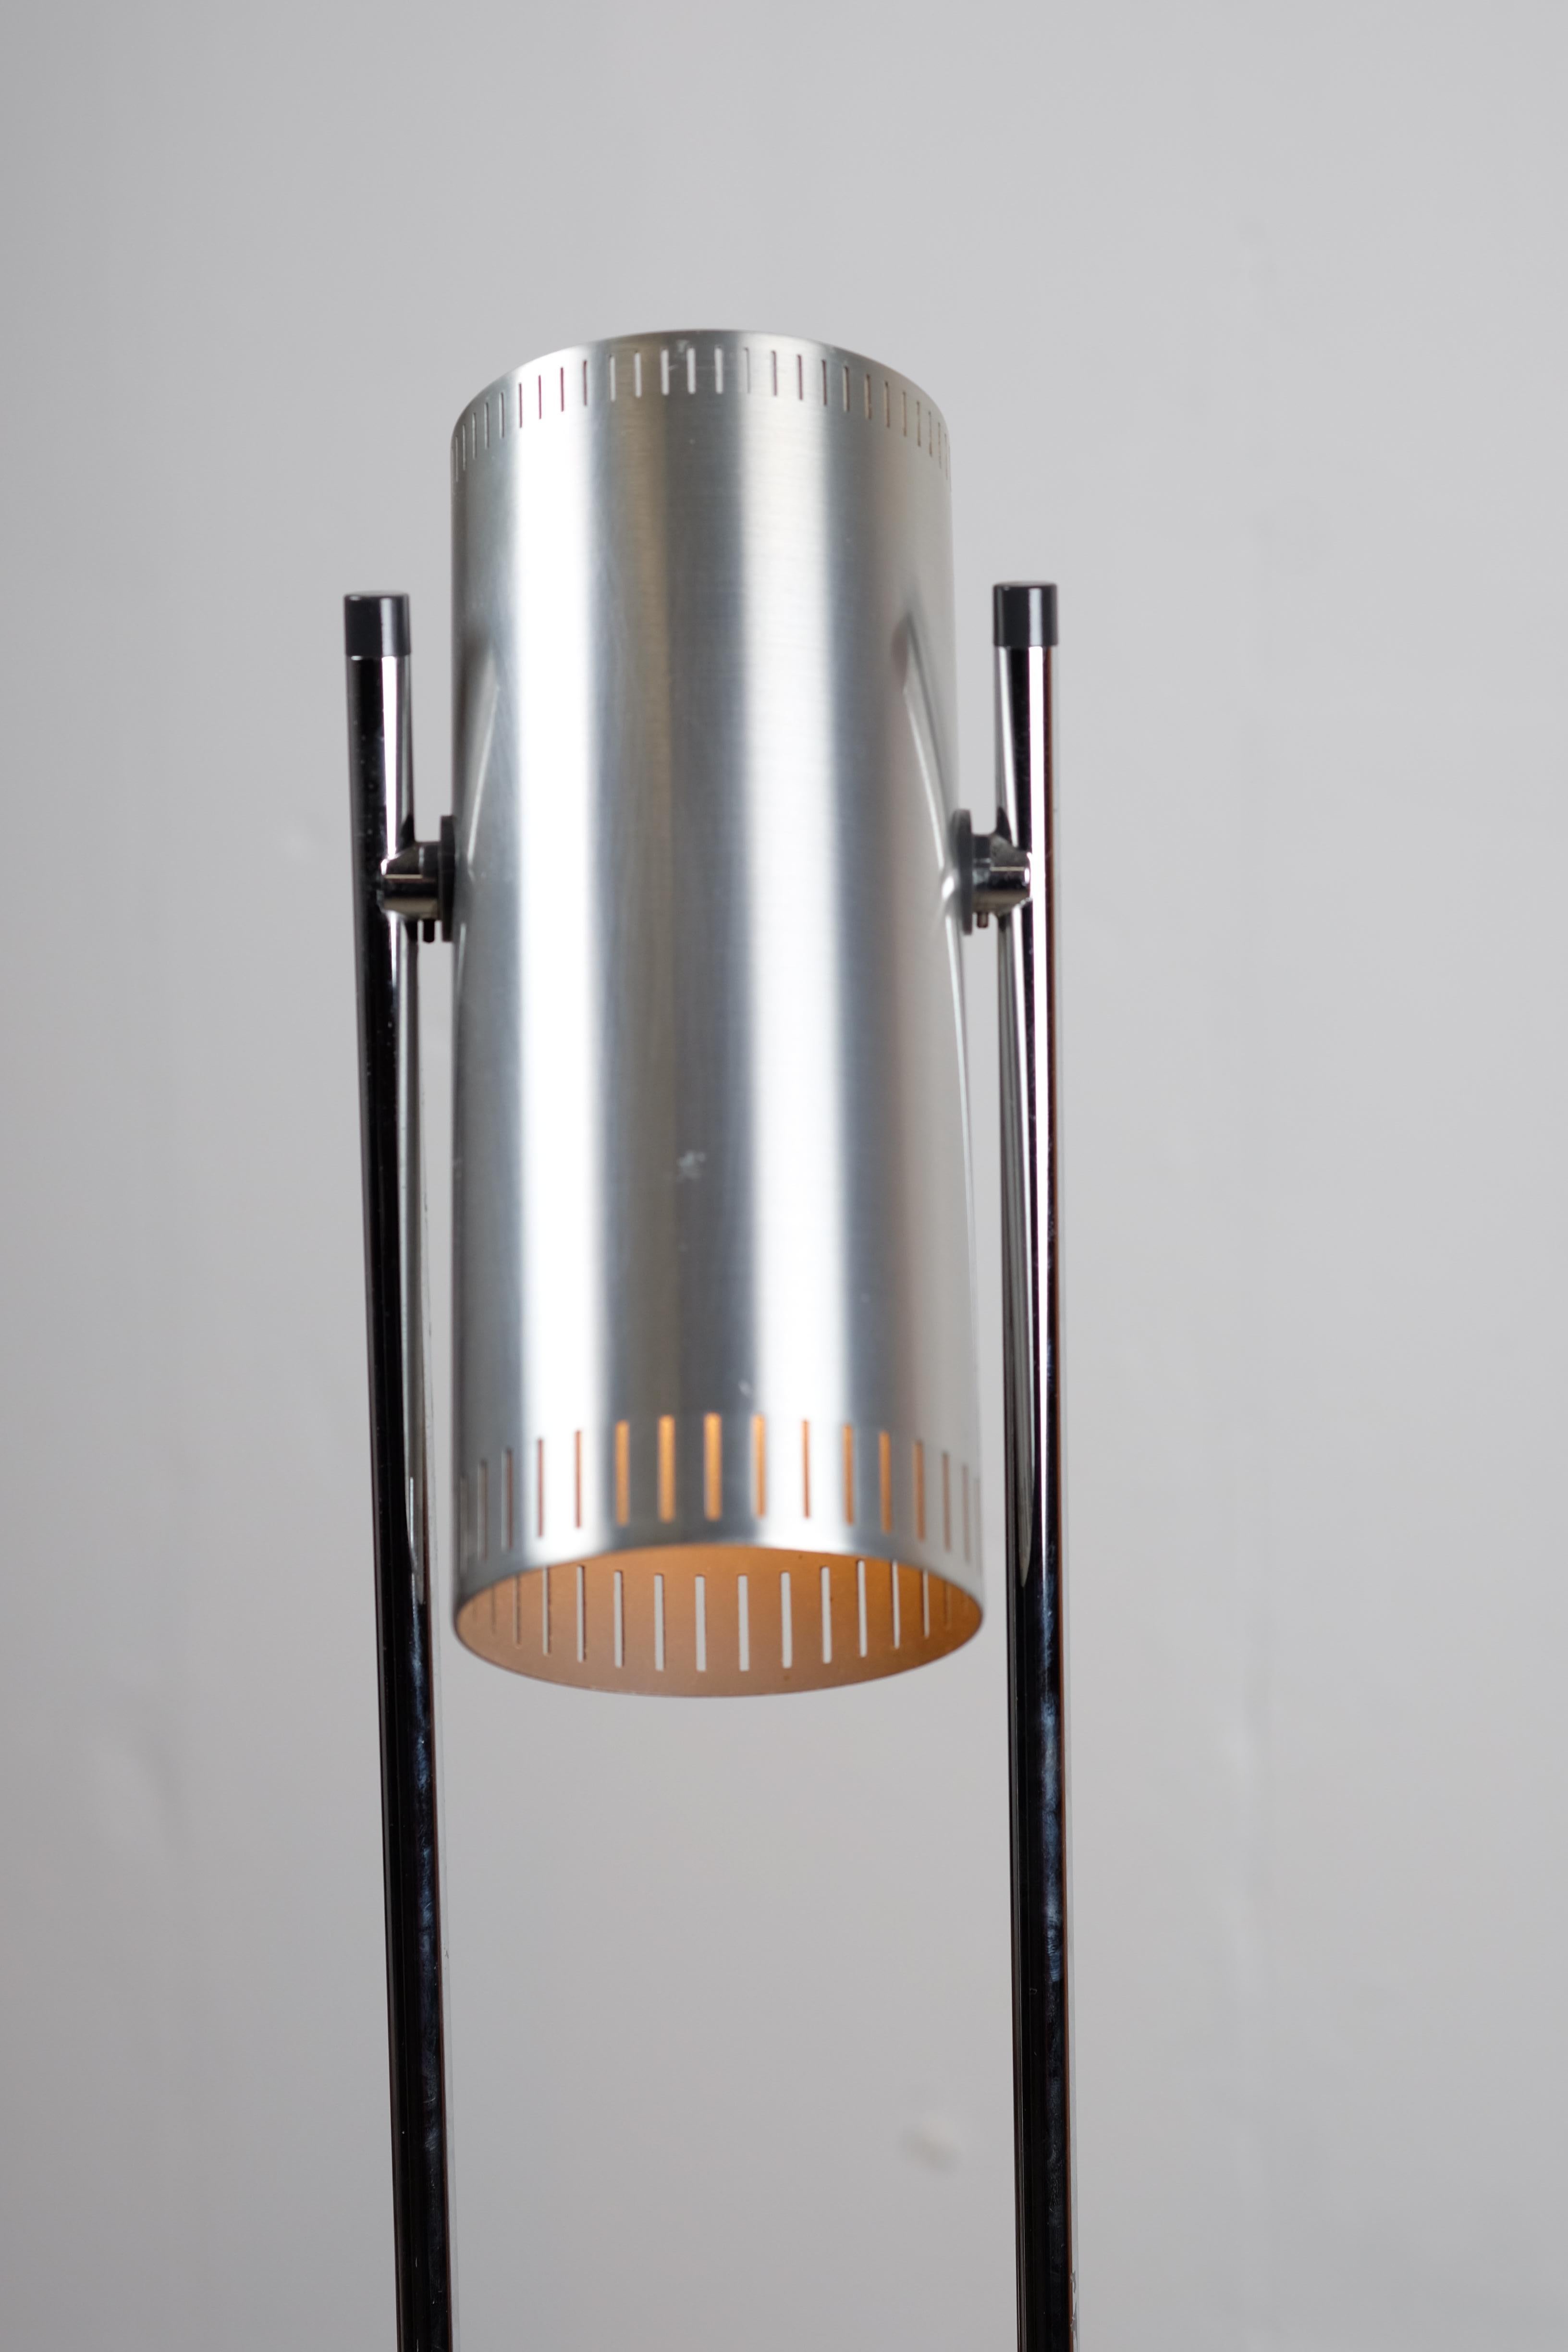 Mid-20th Century Vintage Trombone Floor Lamp by Johannes Hammerborg for Fog & Mørup For Sale